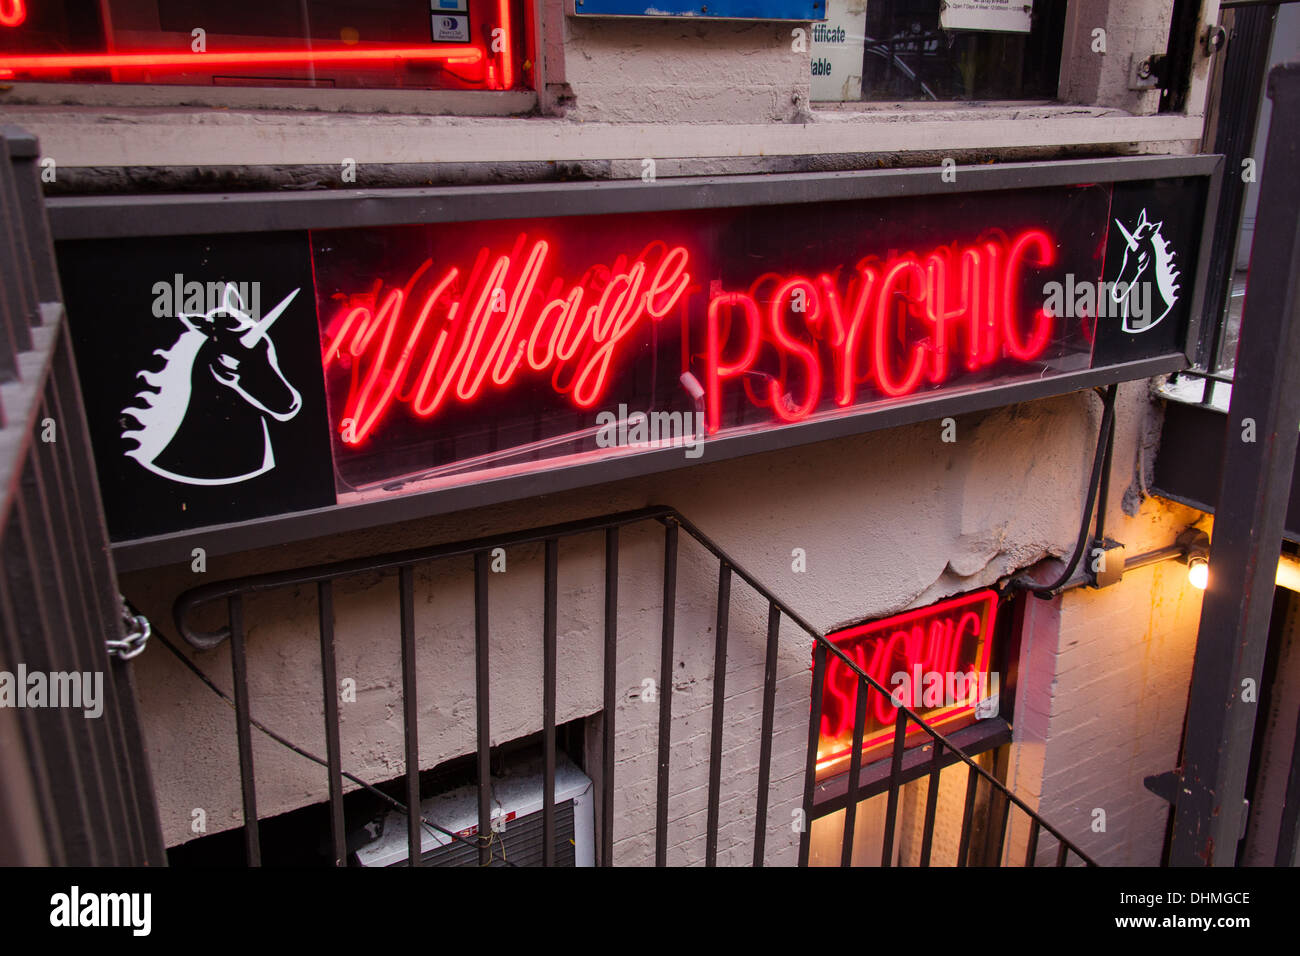 Village Psychic shop front in Greenwich Village, Manhattan, New York City, USA Stock Photo